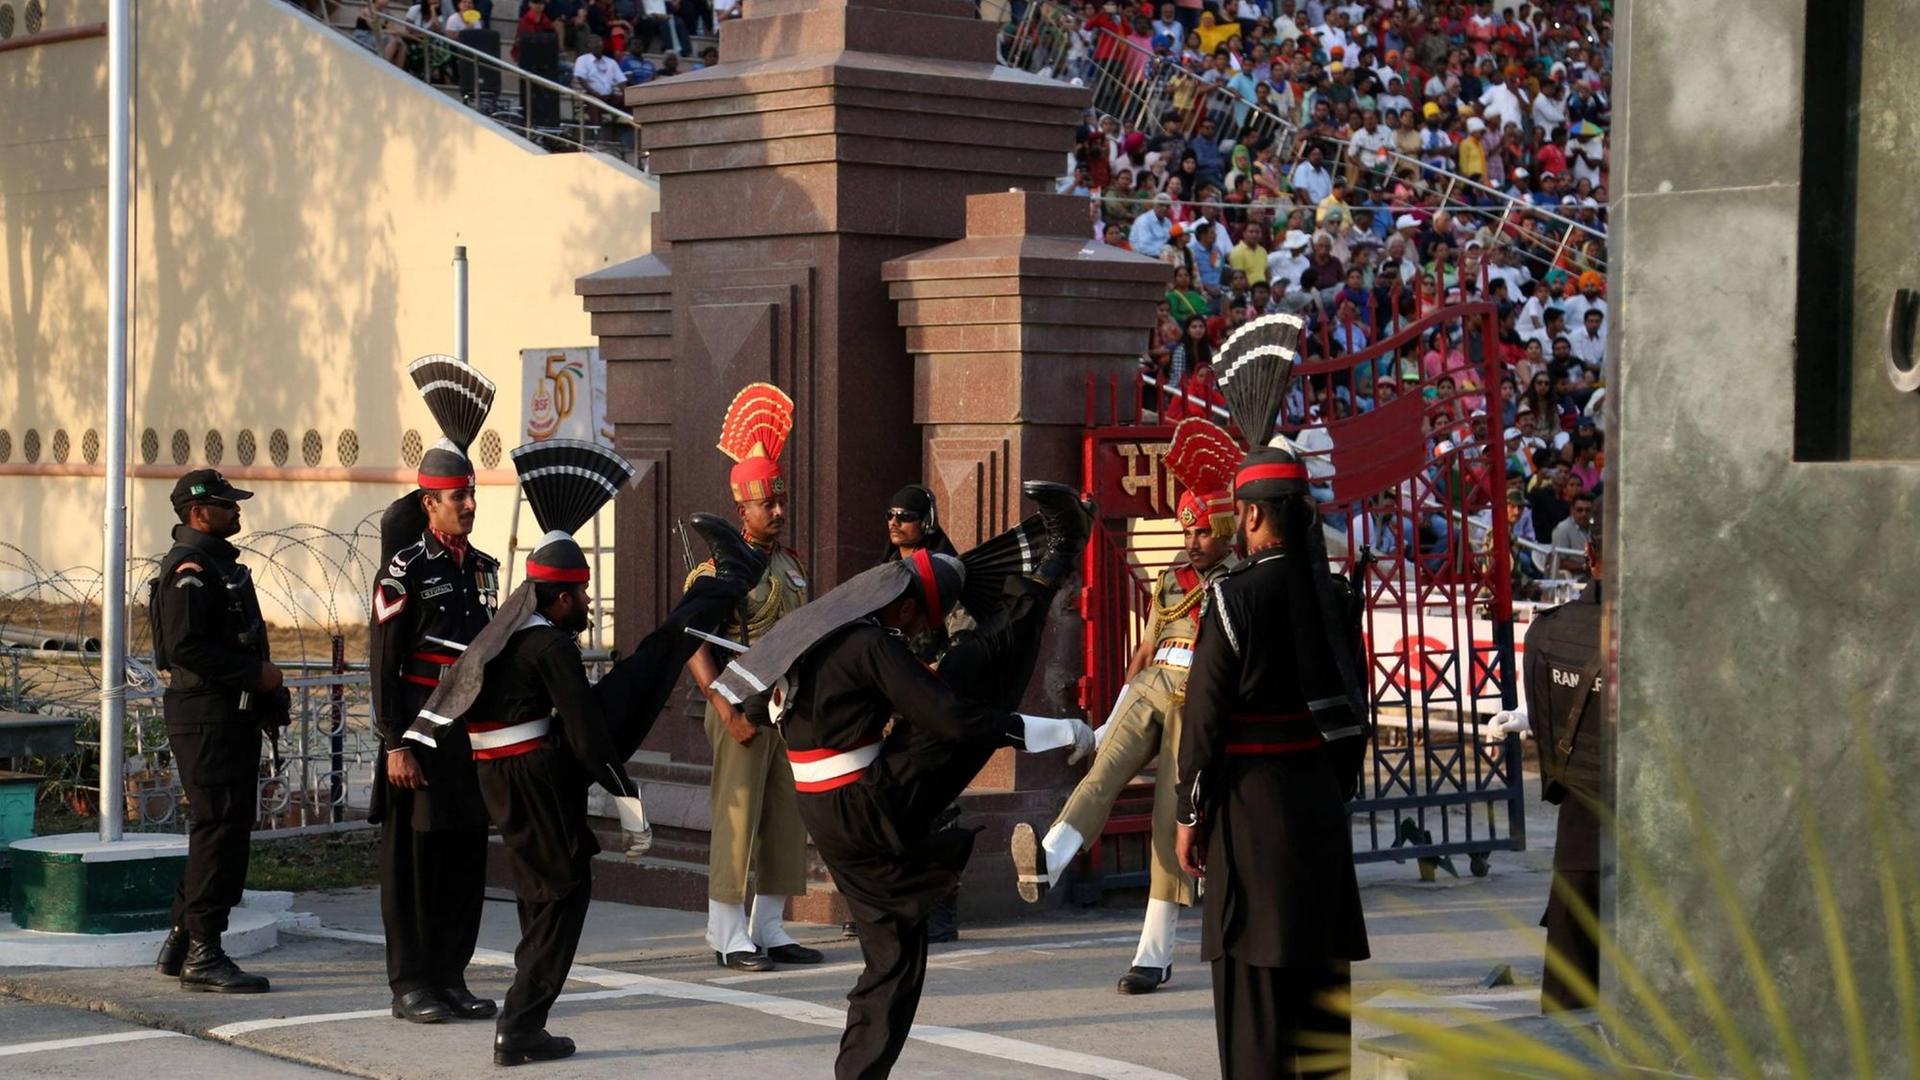 Pakistanische Soldaten in schwarzen Uniformen treffen auf indische Soldaten während einer Fahnenzeremonie am einzigen Grenzübergang in Wagah. Viele Zuschauer aus den verfeindeten Staaten verfolgen die "Beating retreat ceremony".